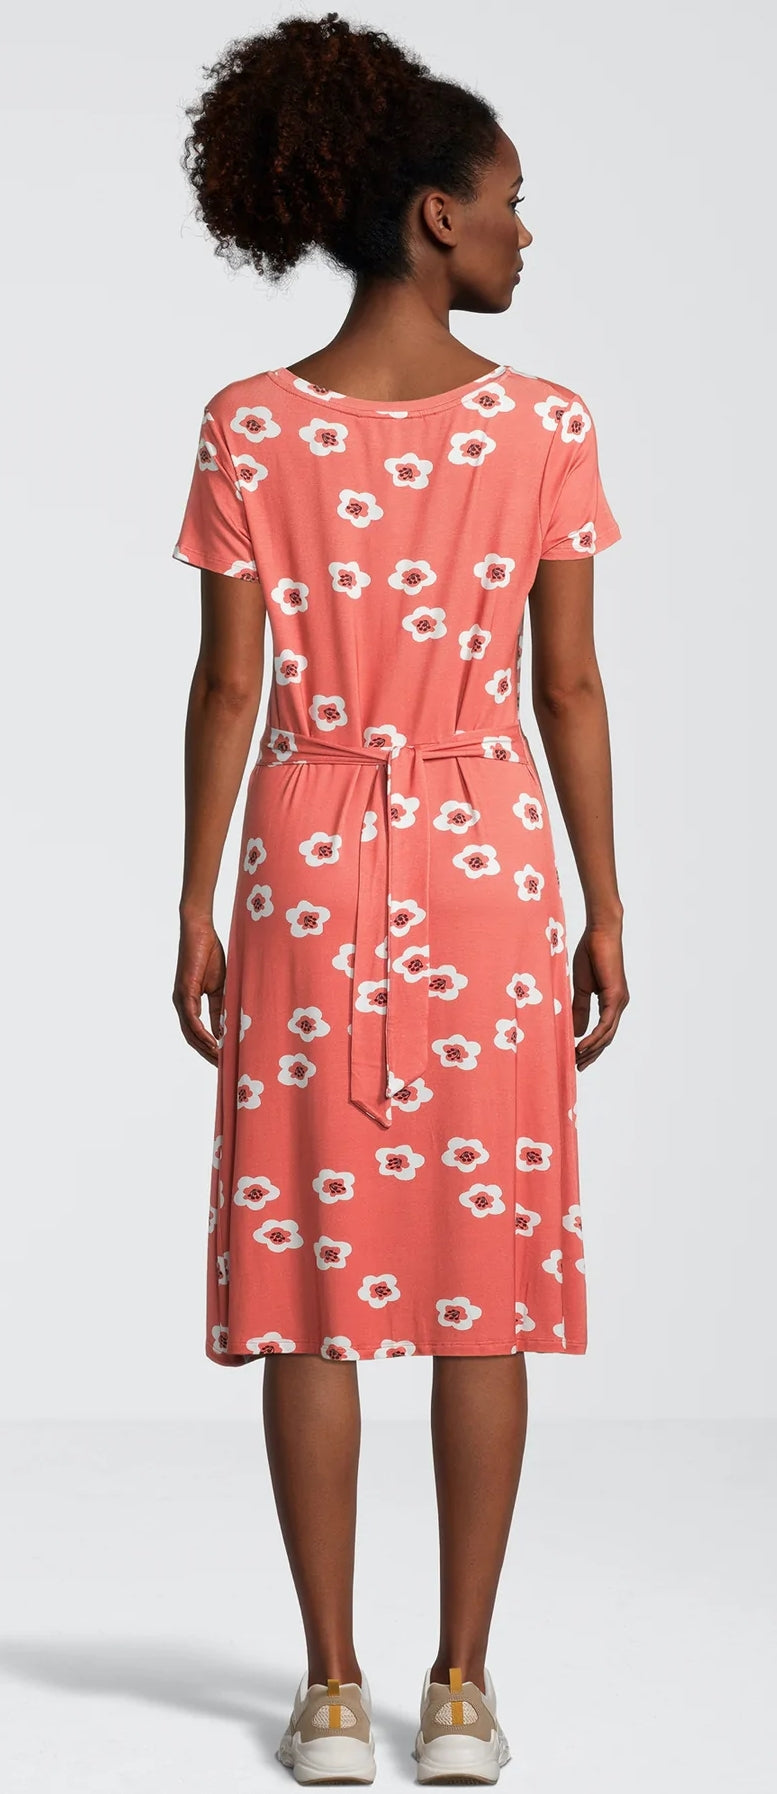 Rupert & Buckley Womens 'Whitson' Floral Dress - Terracotta